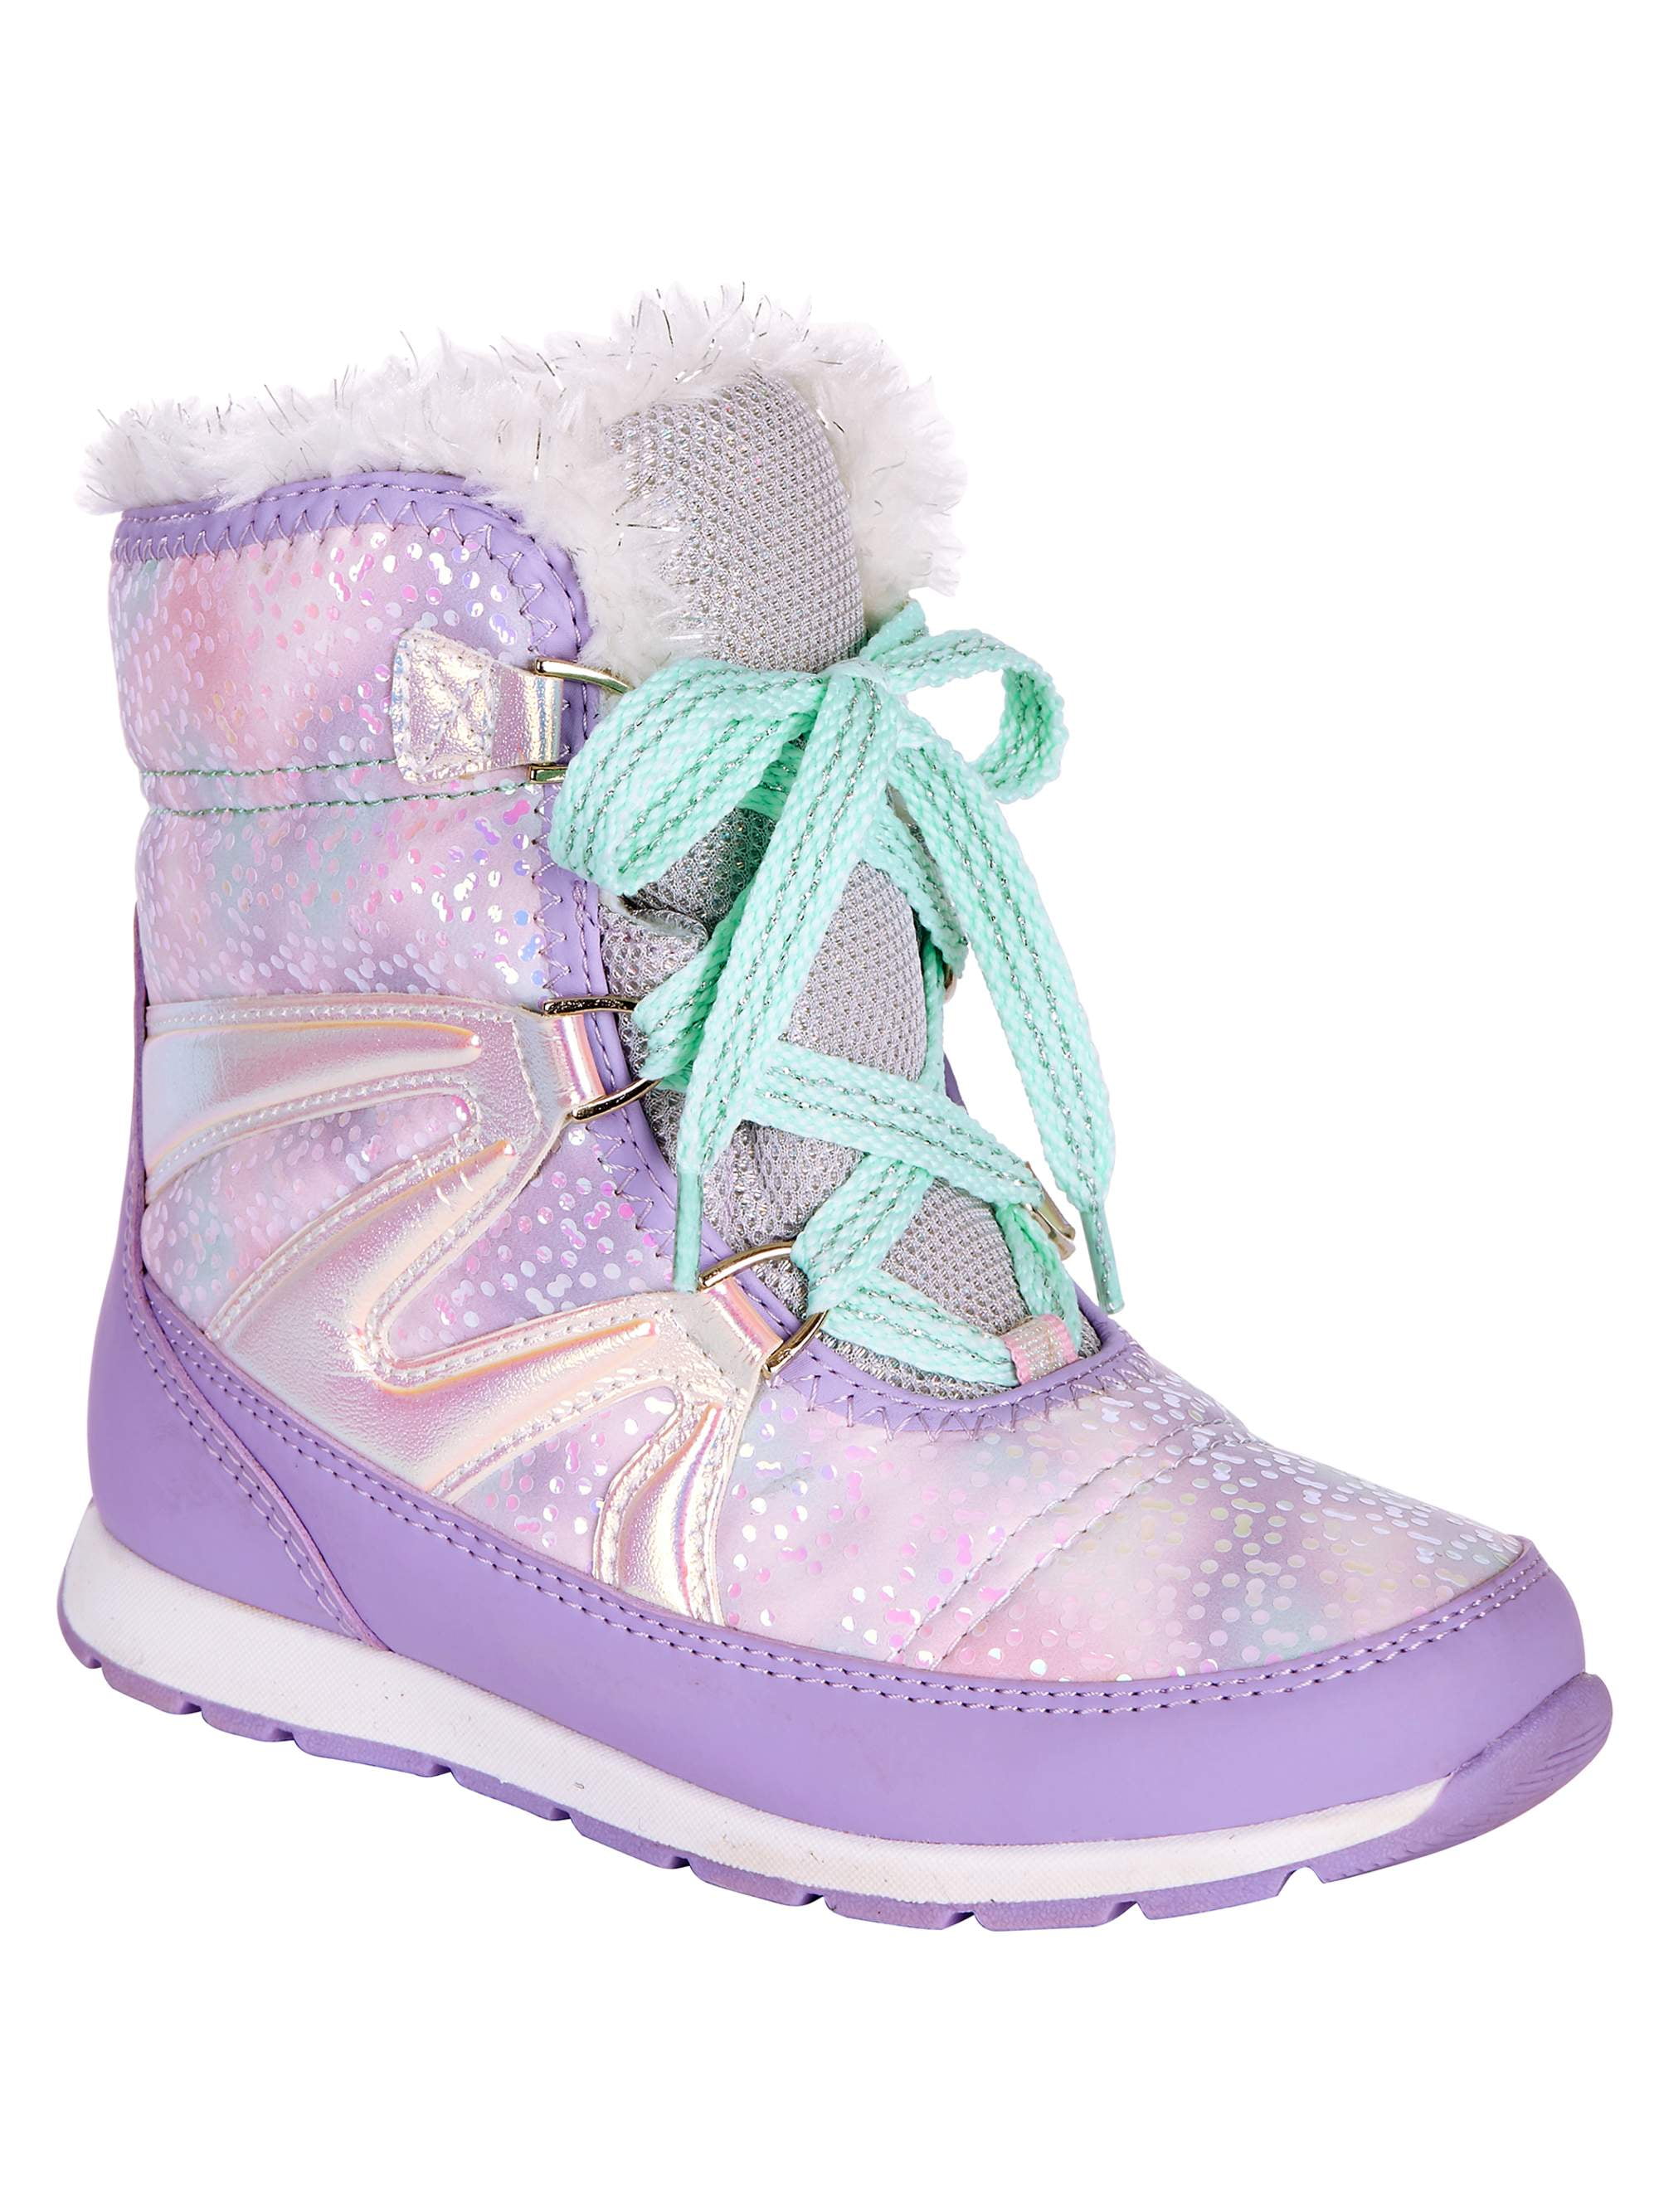 walmart childrens winter boots